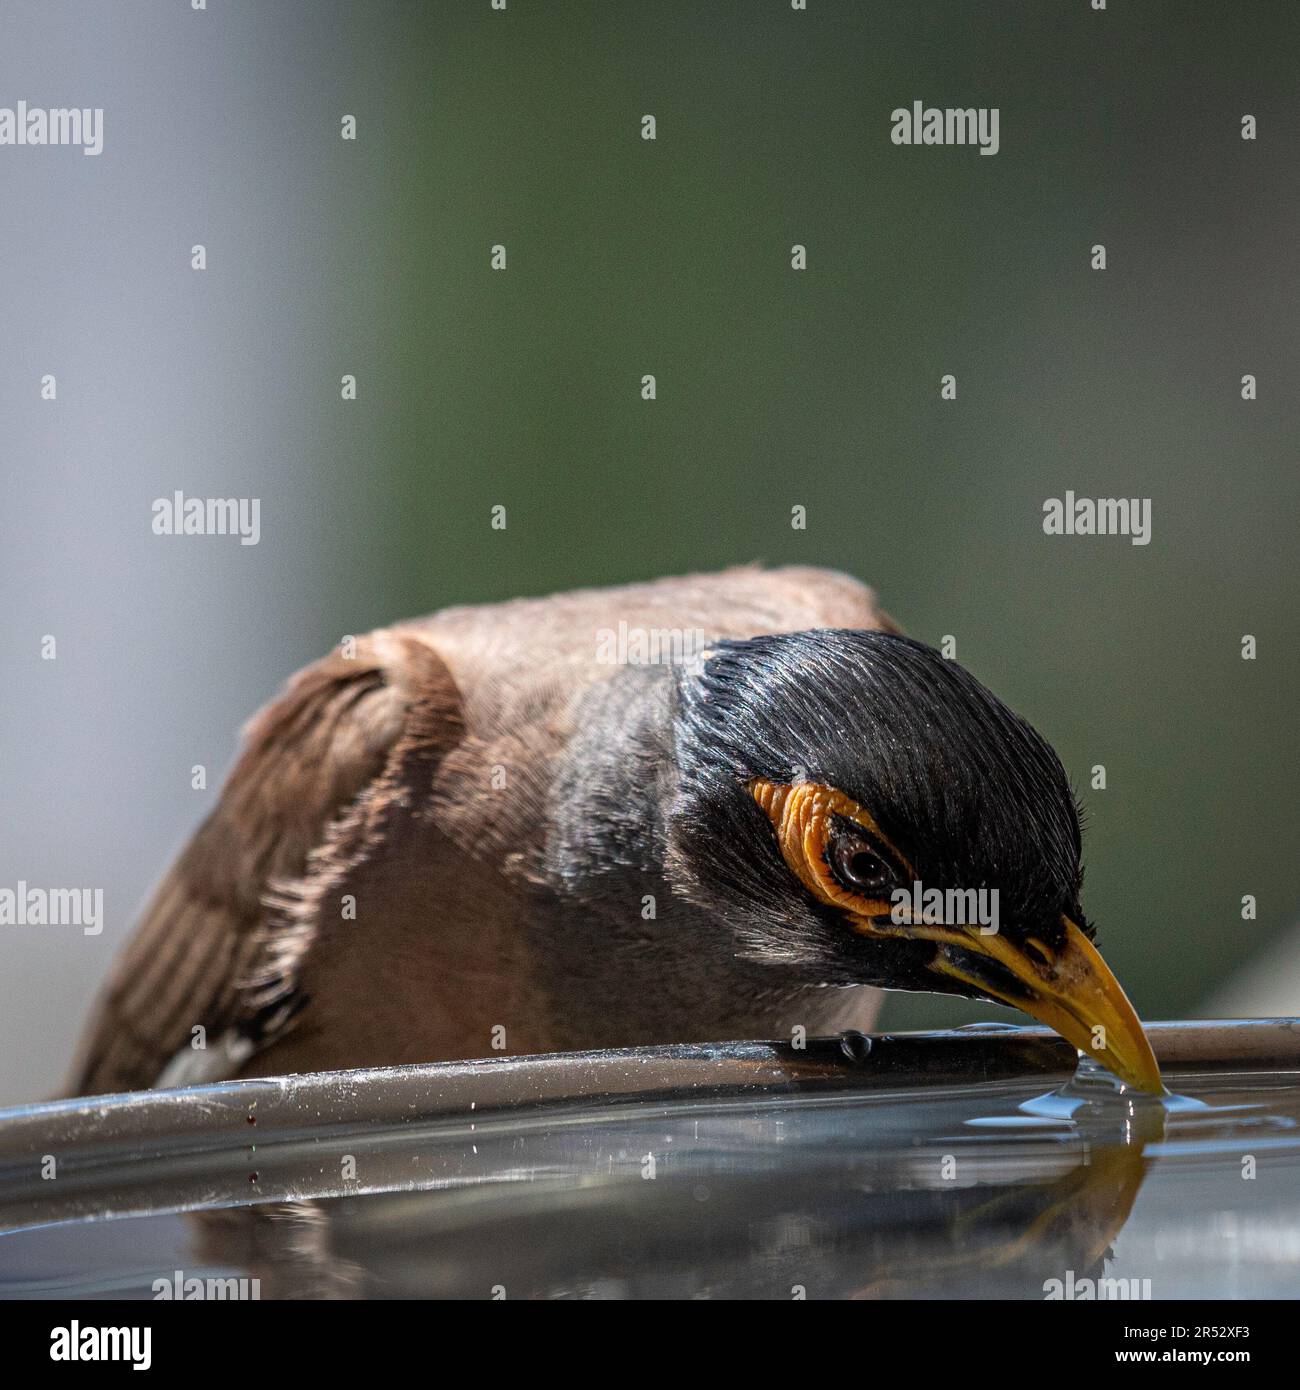 Isoliertes Nahporträt eines einzelnen reifen gewöhnlichen/indischen Myna-Vogels, der an einem heißen Sommertag in seiner häuslichen Umgebung kaltes Wasser trinkt Stockfoto